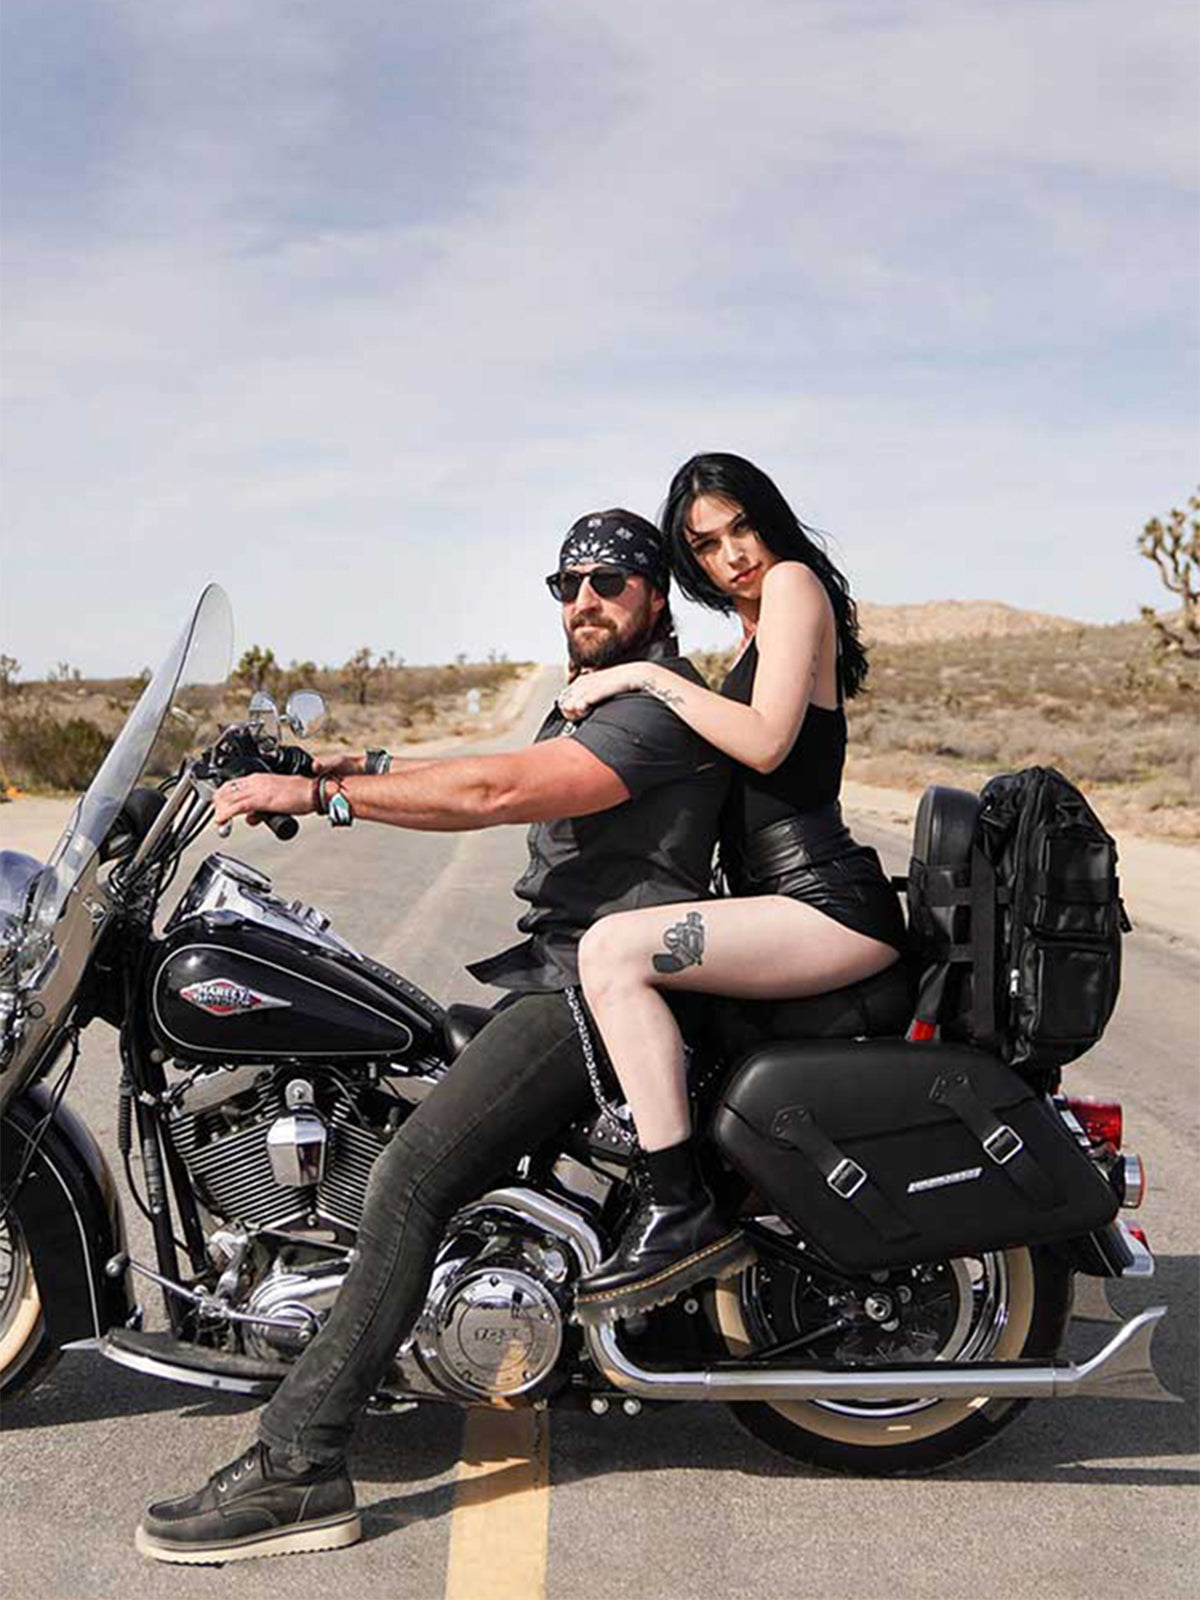 BackrestsSissy Bar Pads for Harley Davidson Motorcycles Vertical